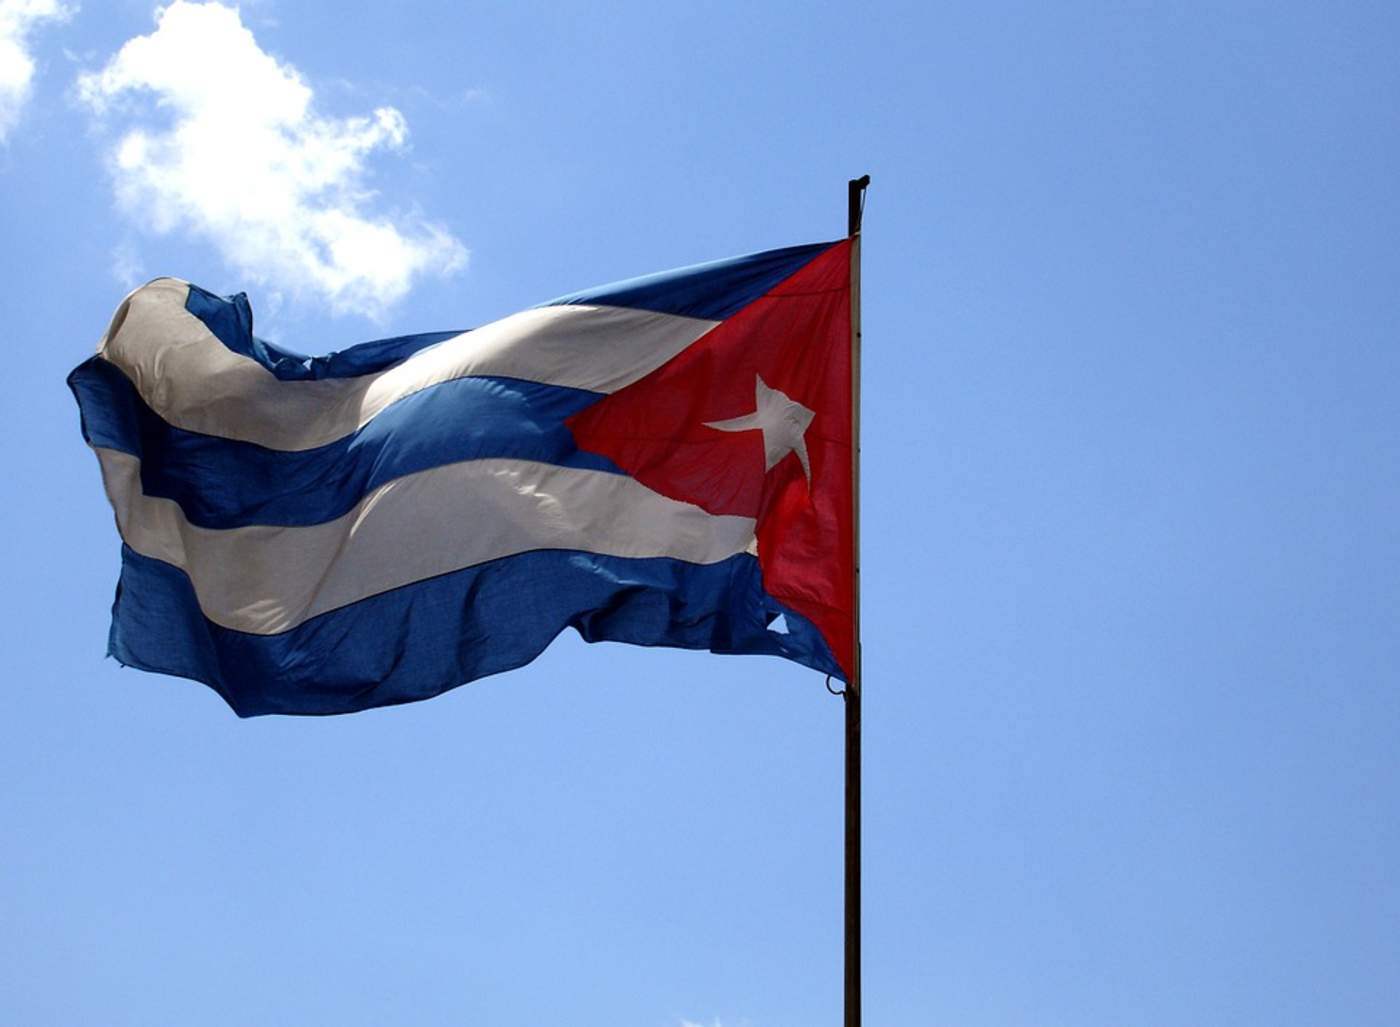 Este será el segundo referendo constitucional que se realiza en Cuba desde el triunfo de la Revolución (1959). El primero se llevó a cabo en 1976 y de su resultado surgió la primera Constitución Socialista de América Latina. (ARCHIVO)